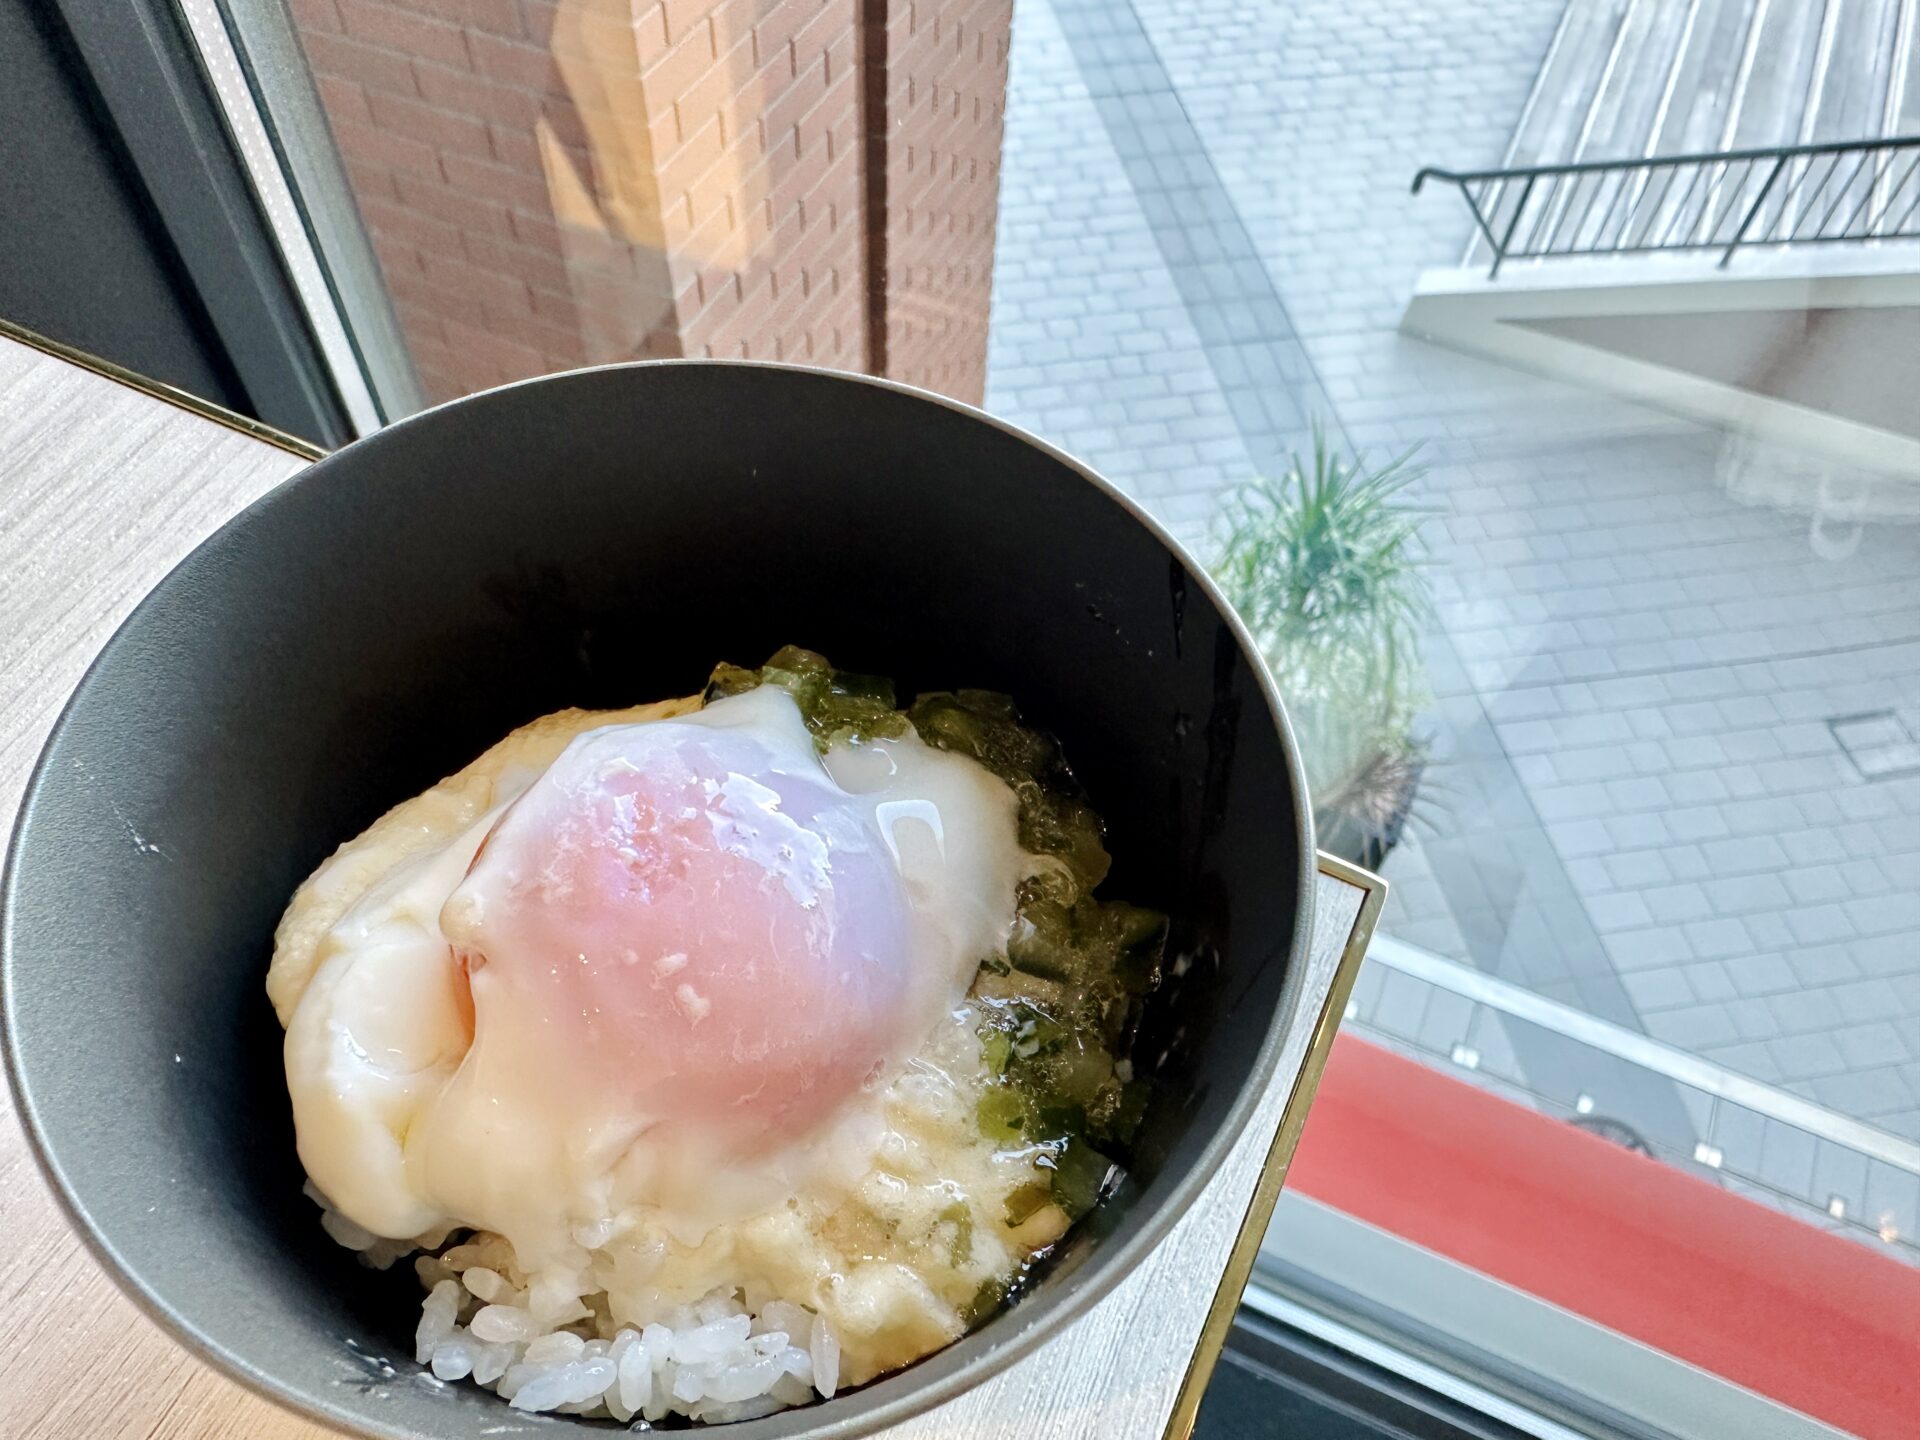 ヒルトン横浜 朝食ブログレビュー 山形ダシととろろ温玉ごはん